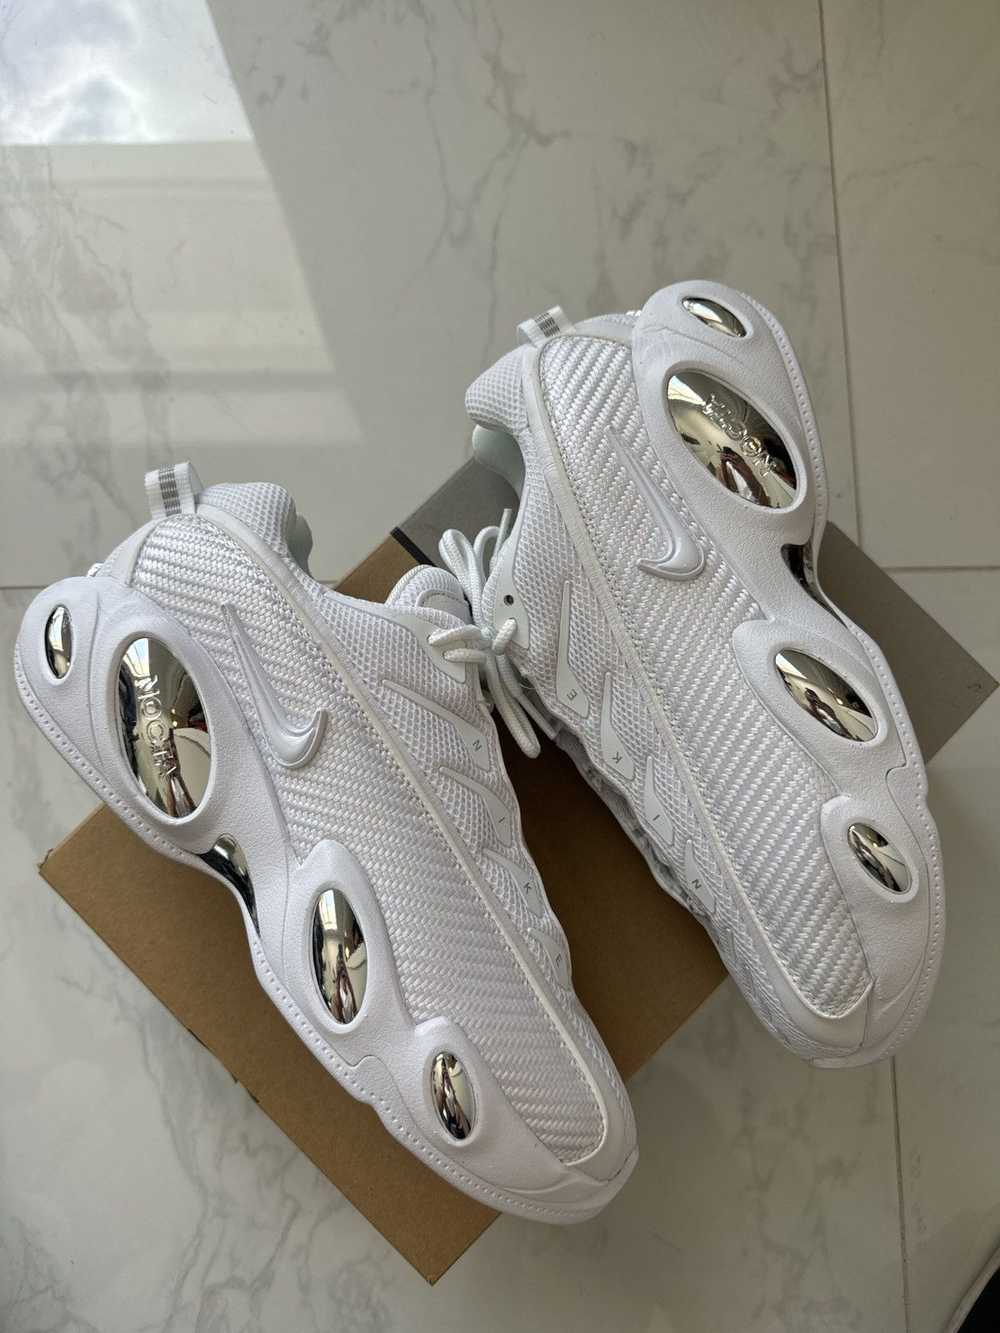 Nike Nocta glide white size 9 - image 2